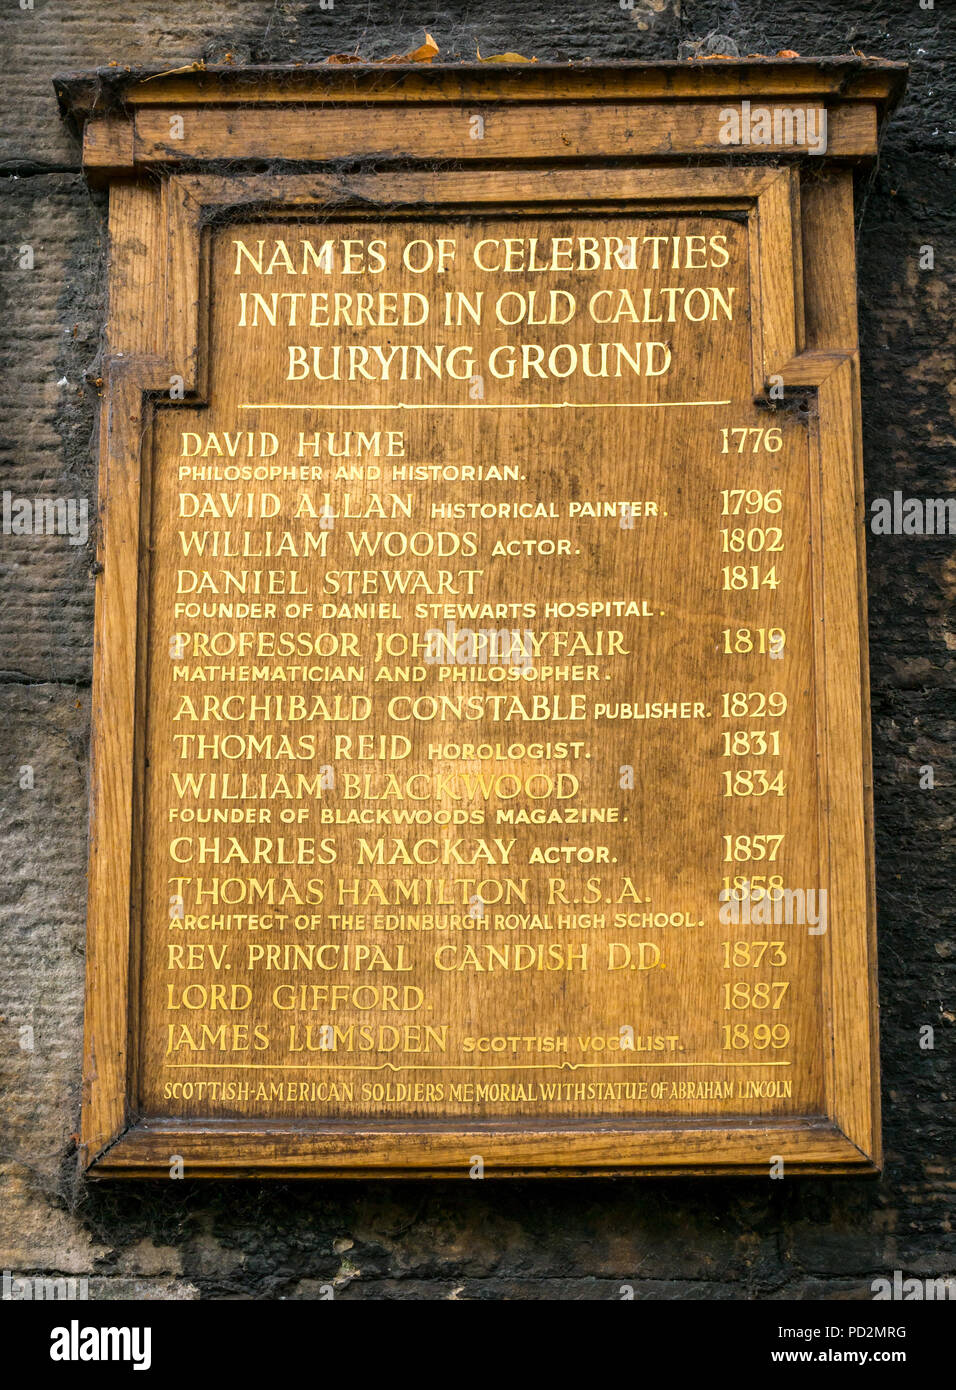 Alte Holz- board mit Liste der Namen von berühmten Menschen in Alten Calton Grabstätte begraben, Edinburgh, Schottland, Großbritannien verfügt über David Hume und John playfair Stockfoto